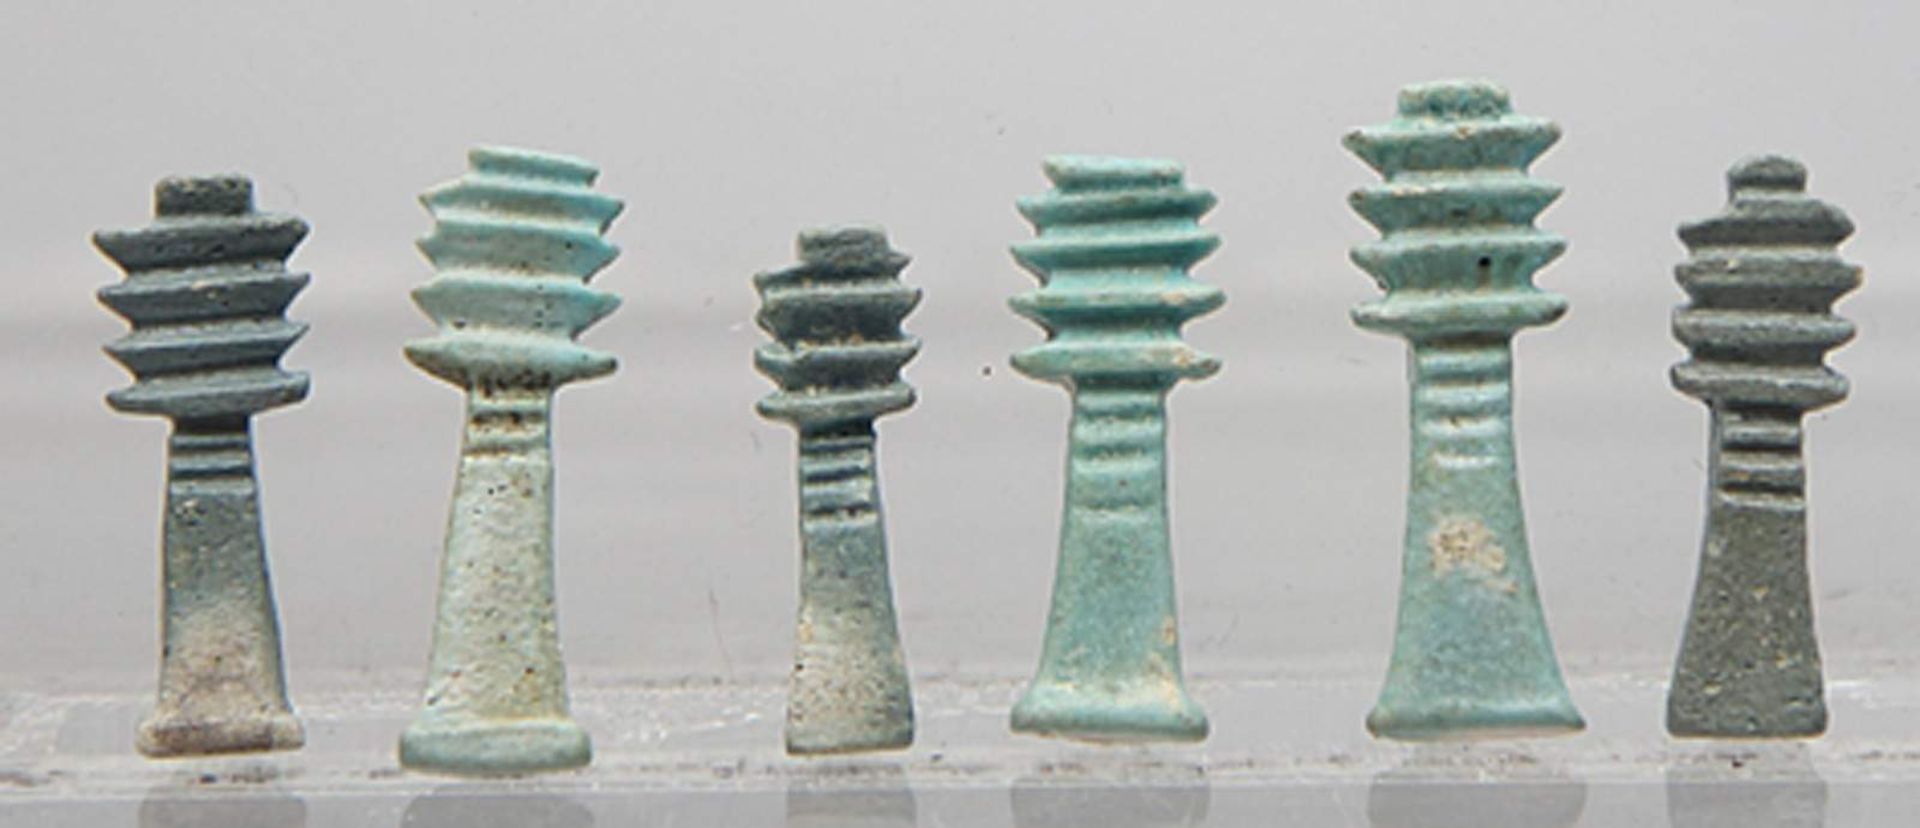 Sechs Djed-Pfeiler-Amulette.In verschiedenen Türkistönen glasierte Fayence. Je mit horizontaler